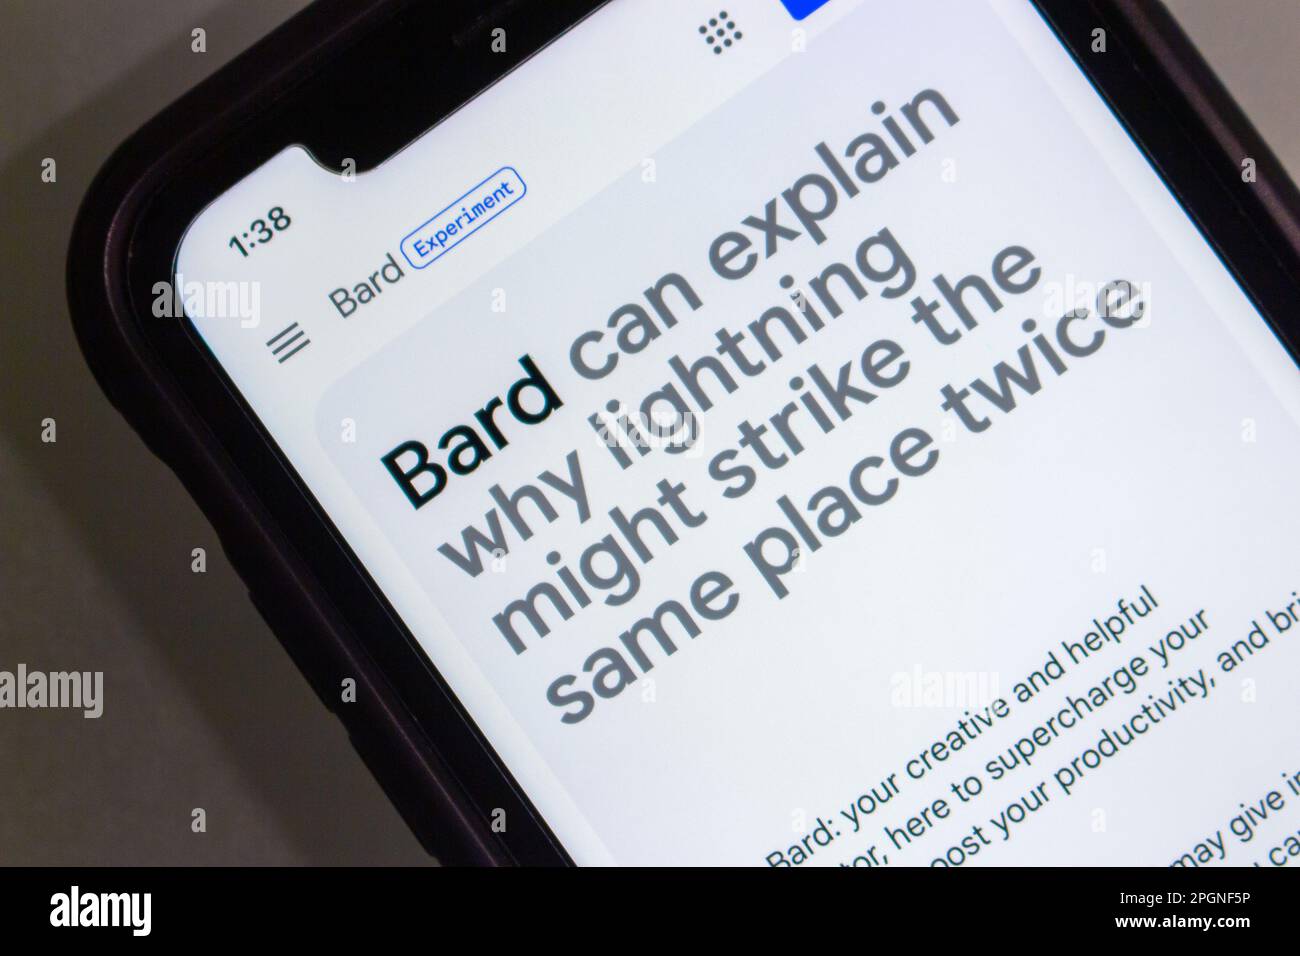 Site officiel de Google Bard, le service de chat ai de Google qui est similaire à ChatGPT d'OpenAI, vu dans iPhone. Bard Waitlist a été ouvert à 21 mars Banque D'Images